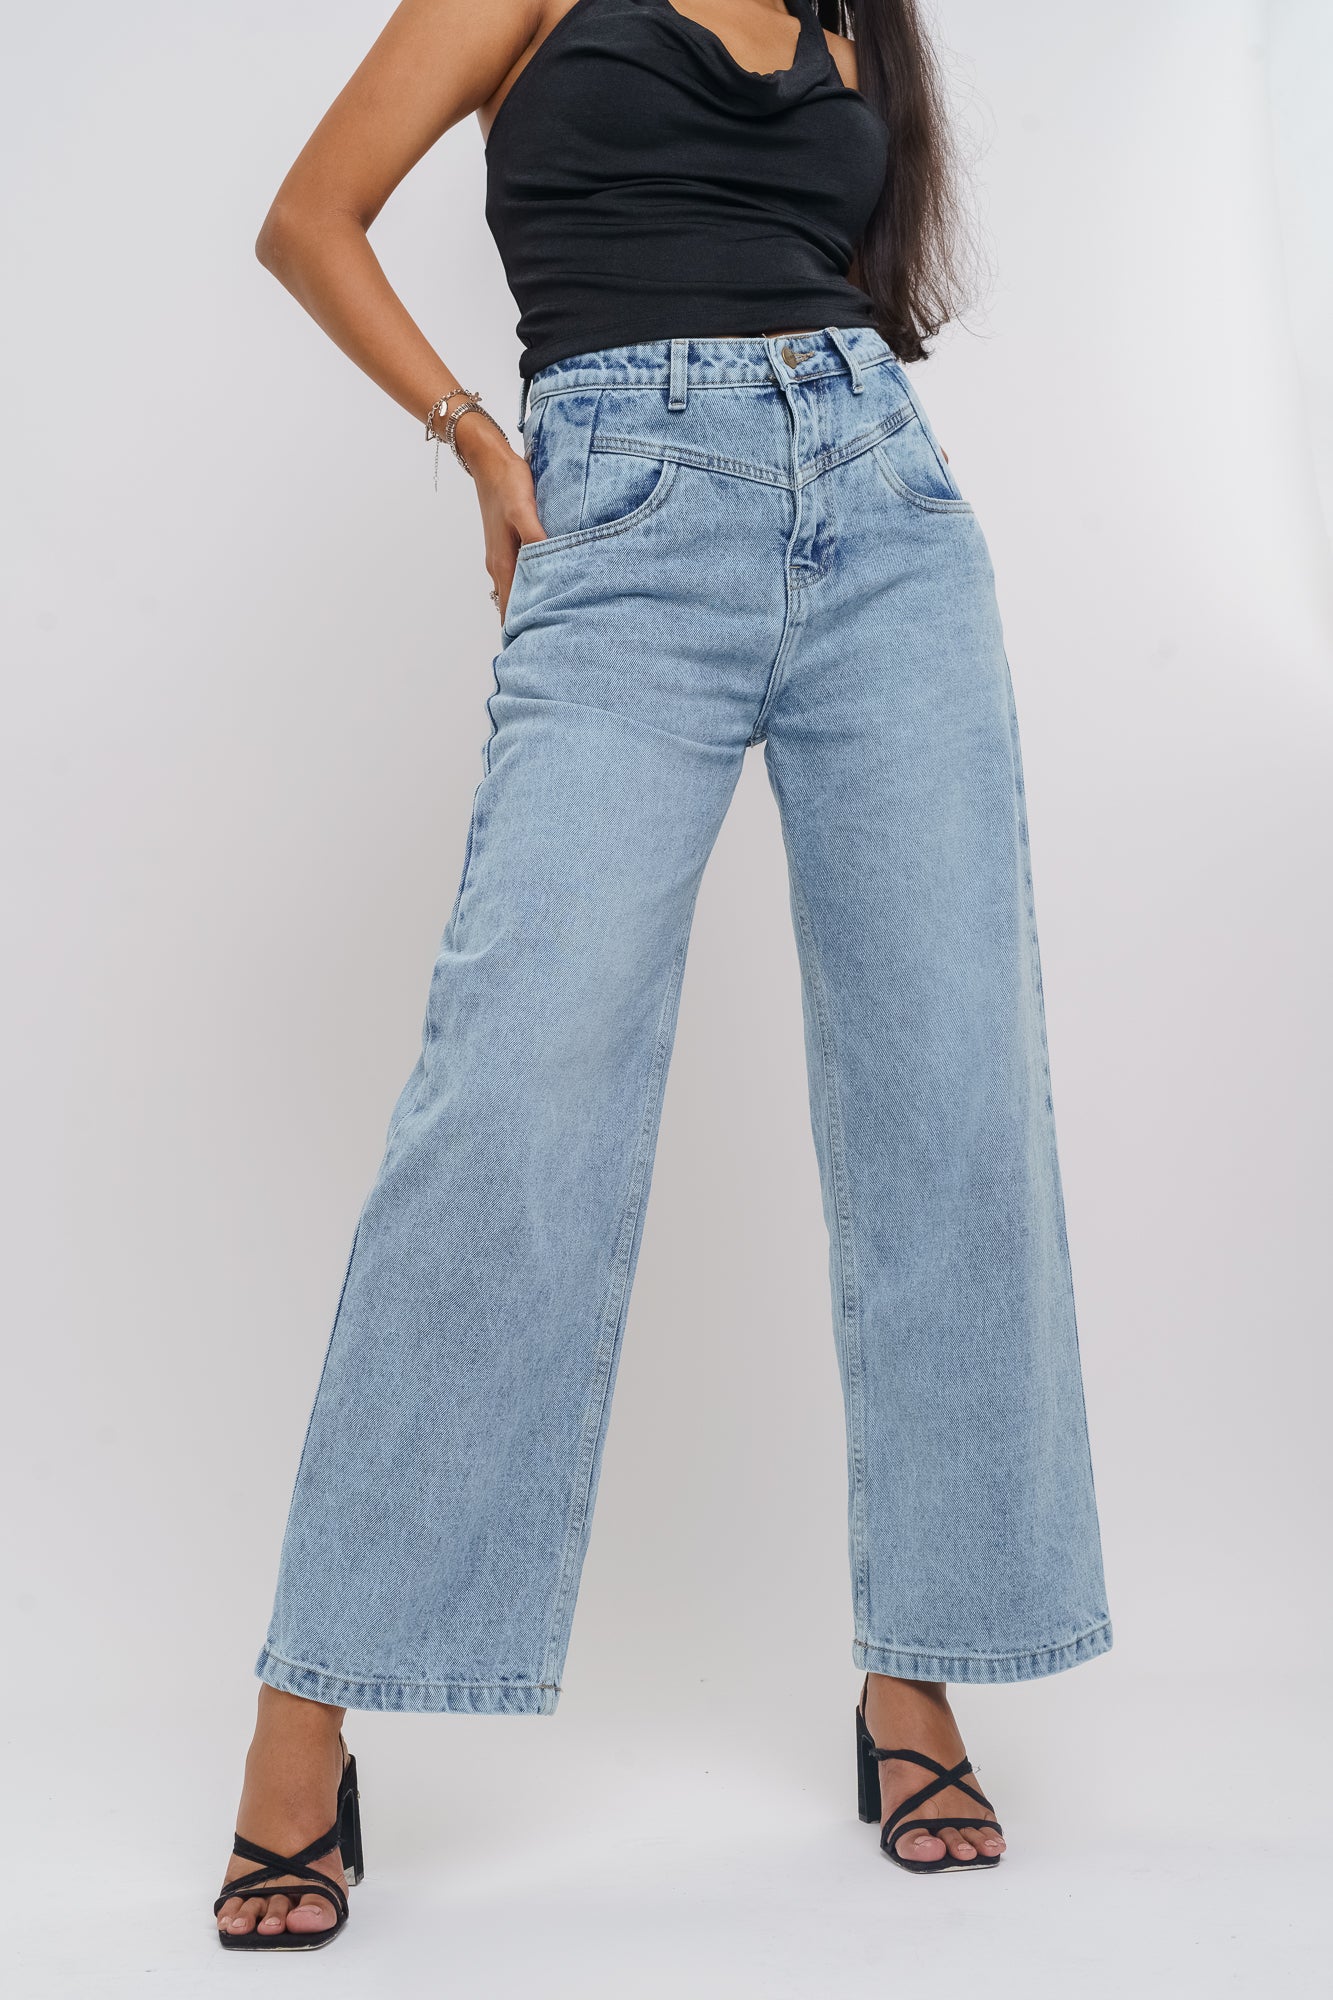 Jeans Outfit Ideas  POPSUGAR Fashion